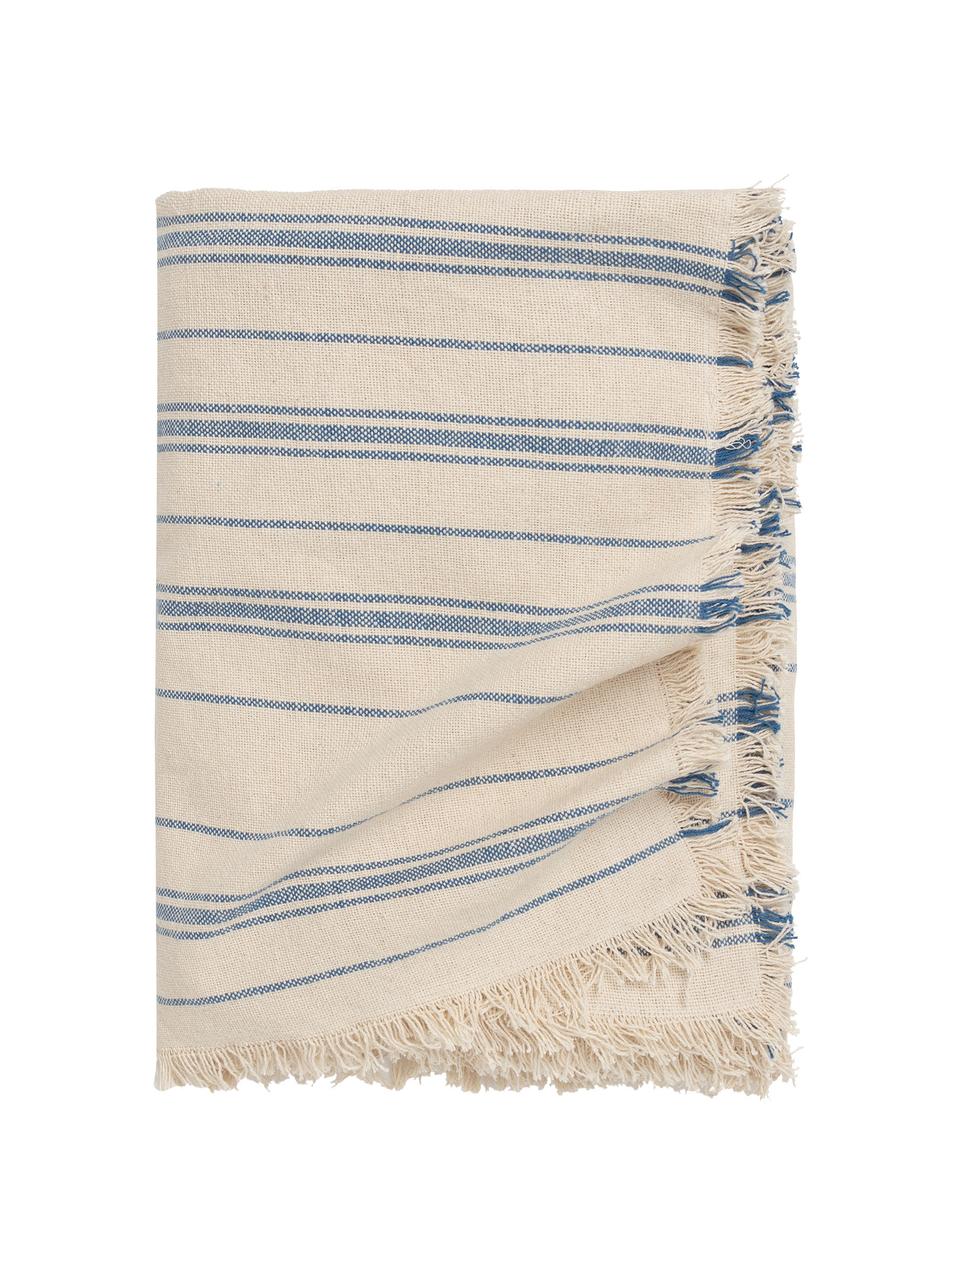 Pruhovaný přehoz z bavlny Capri, 100 % bavlna, Krémová, modrá, Š 180 cm, D 260 cm (pro postele s rozměry až 140 x 200 cm)